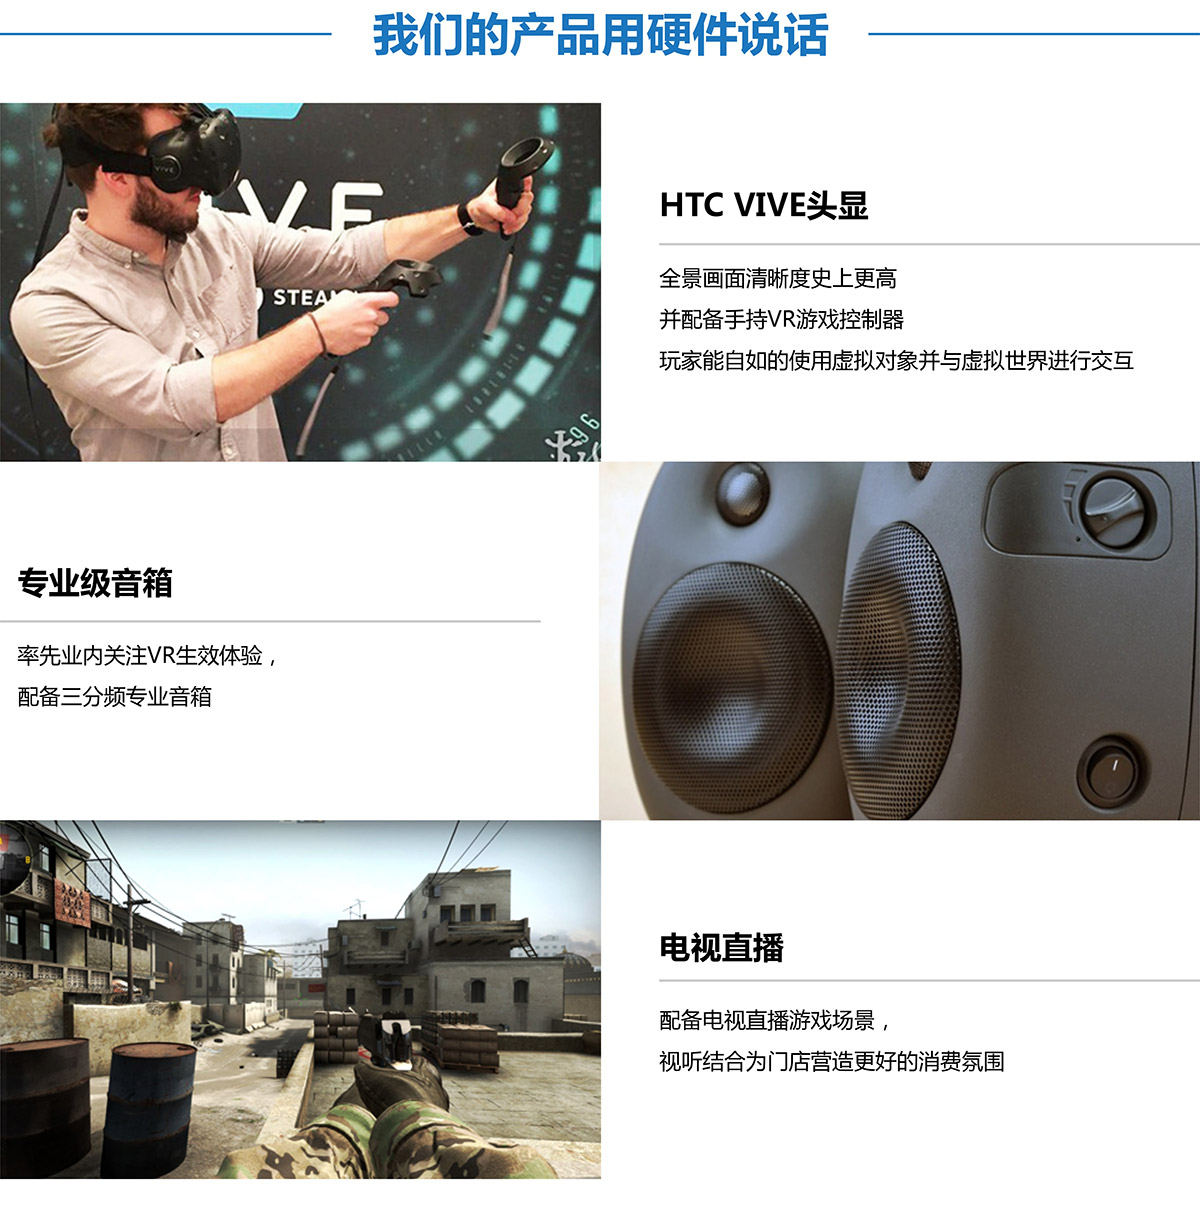 甘肃兰州奇影幻境VR探索用硬件说话.jpg